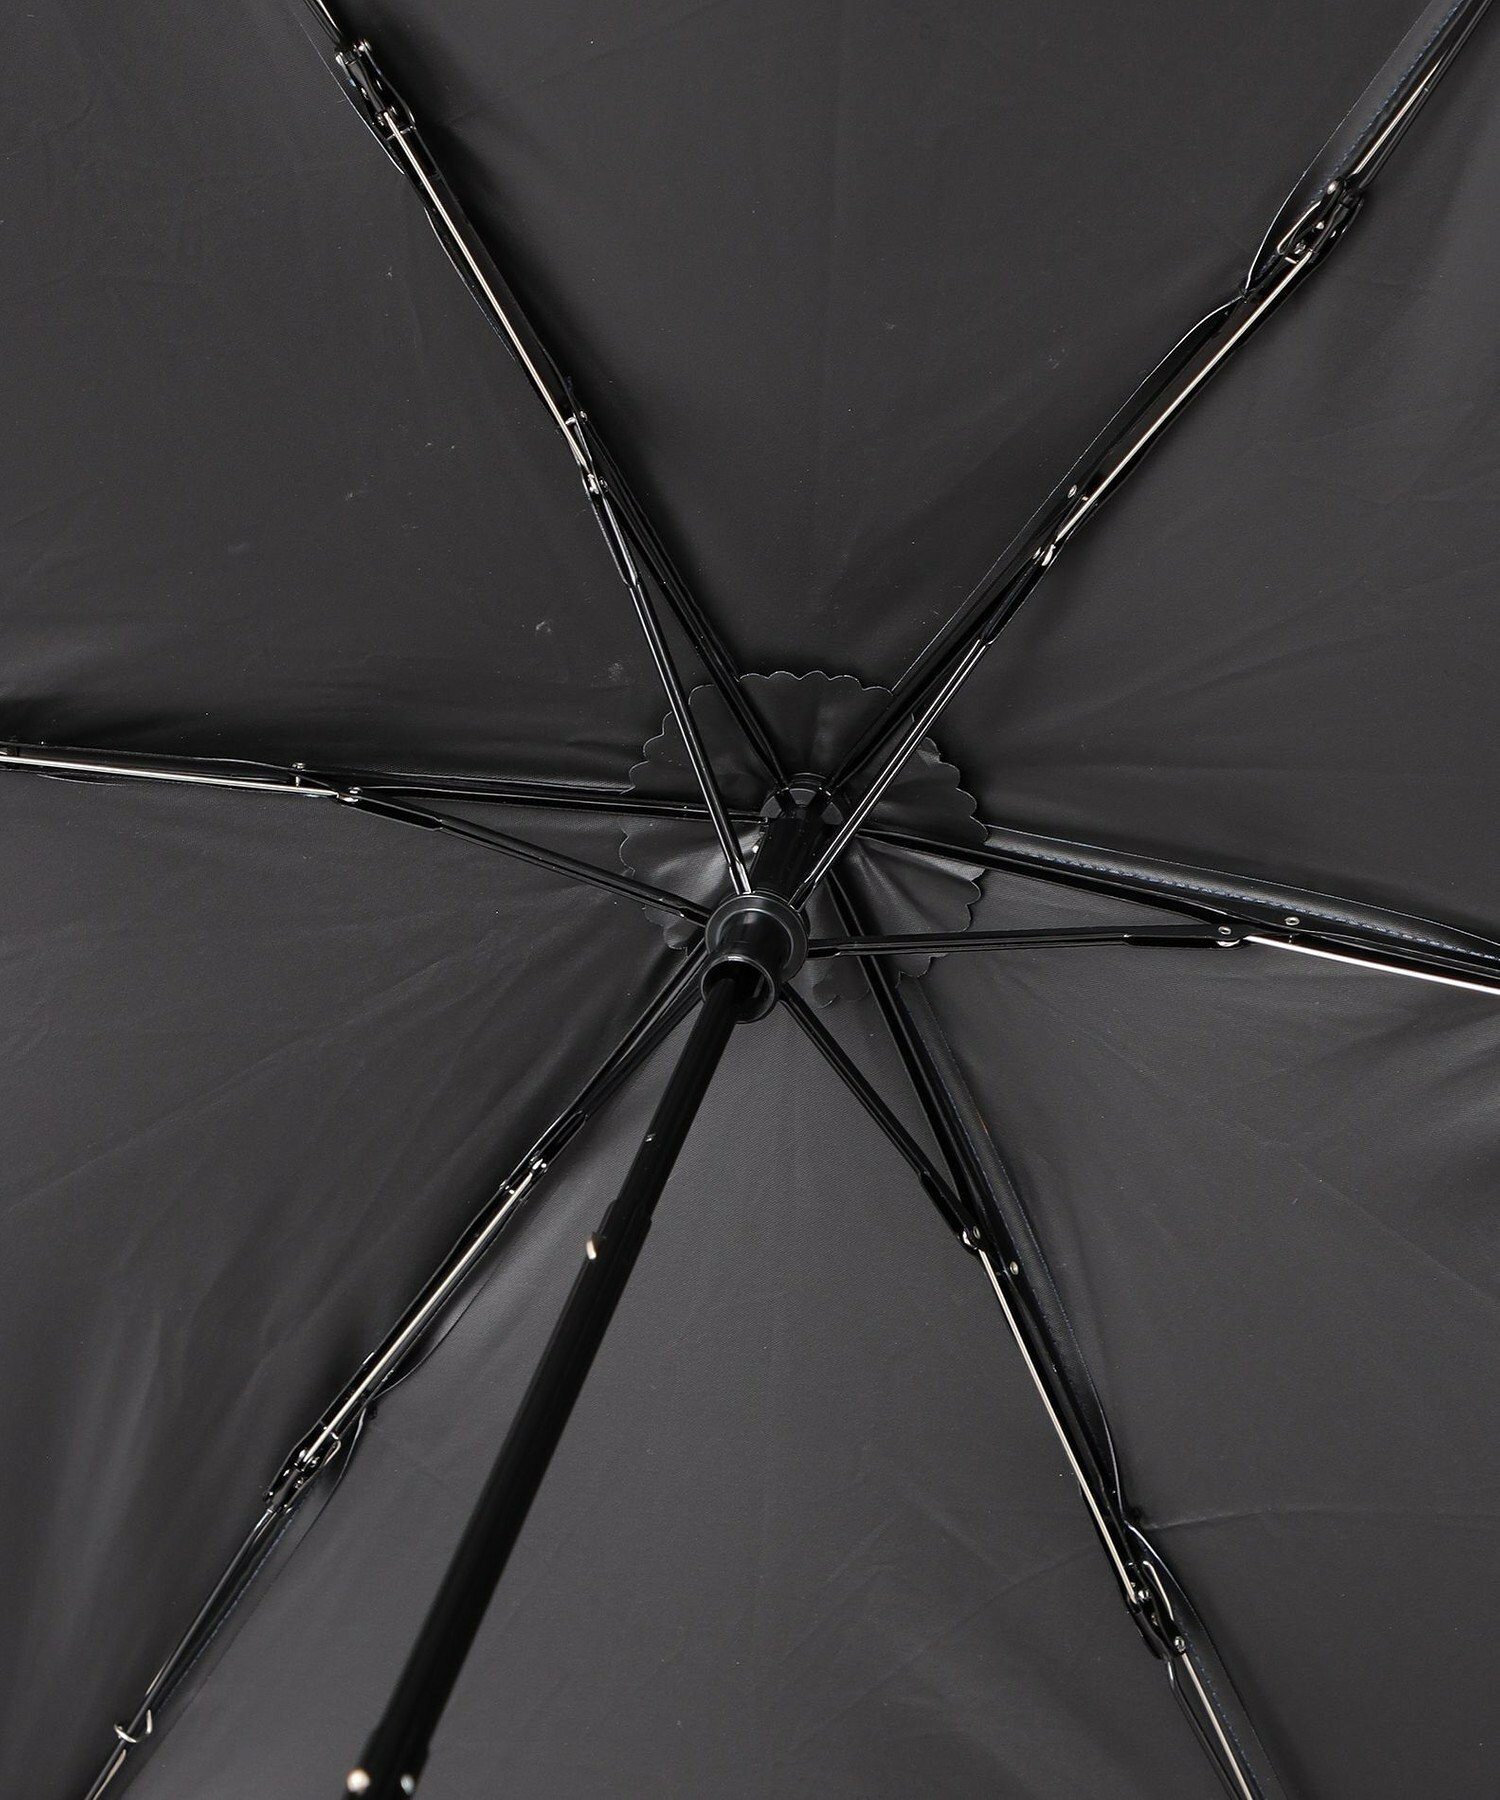 【80周年記念アイテム】晴雨兼用ボーダープリント折り畳み傘